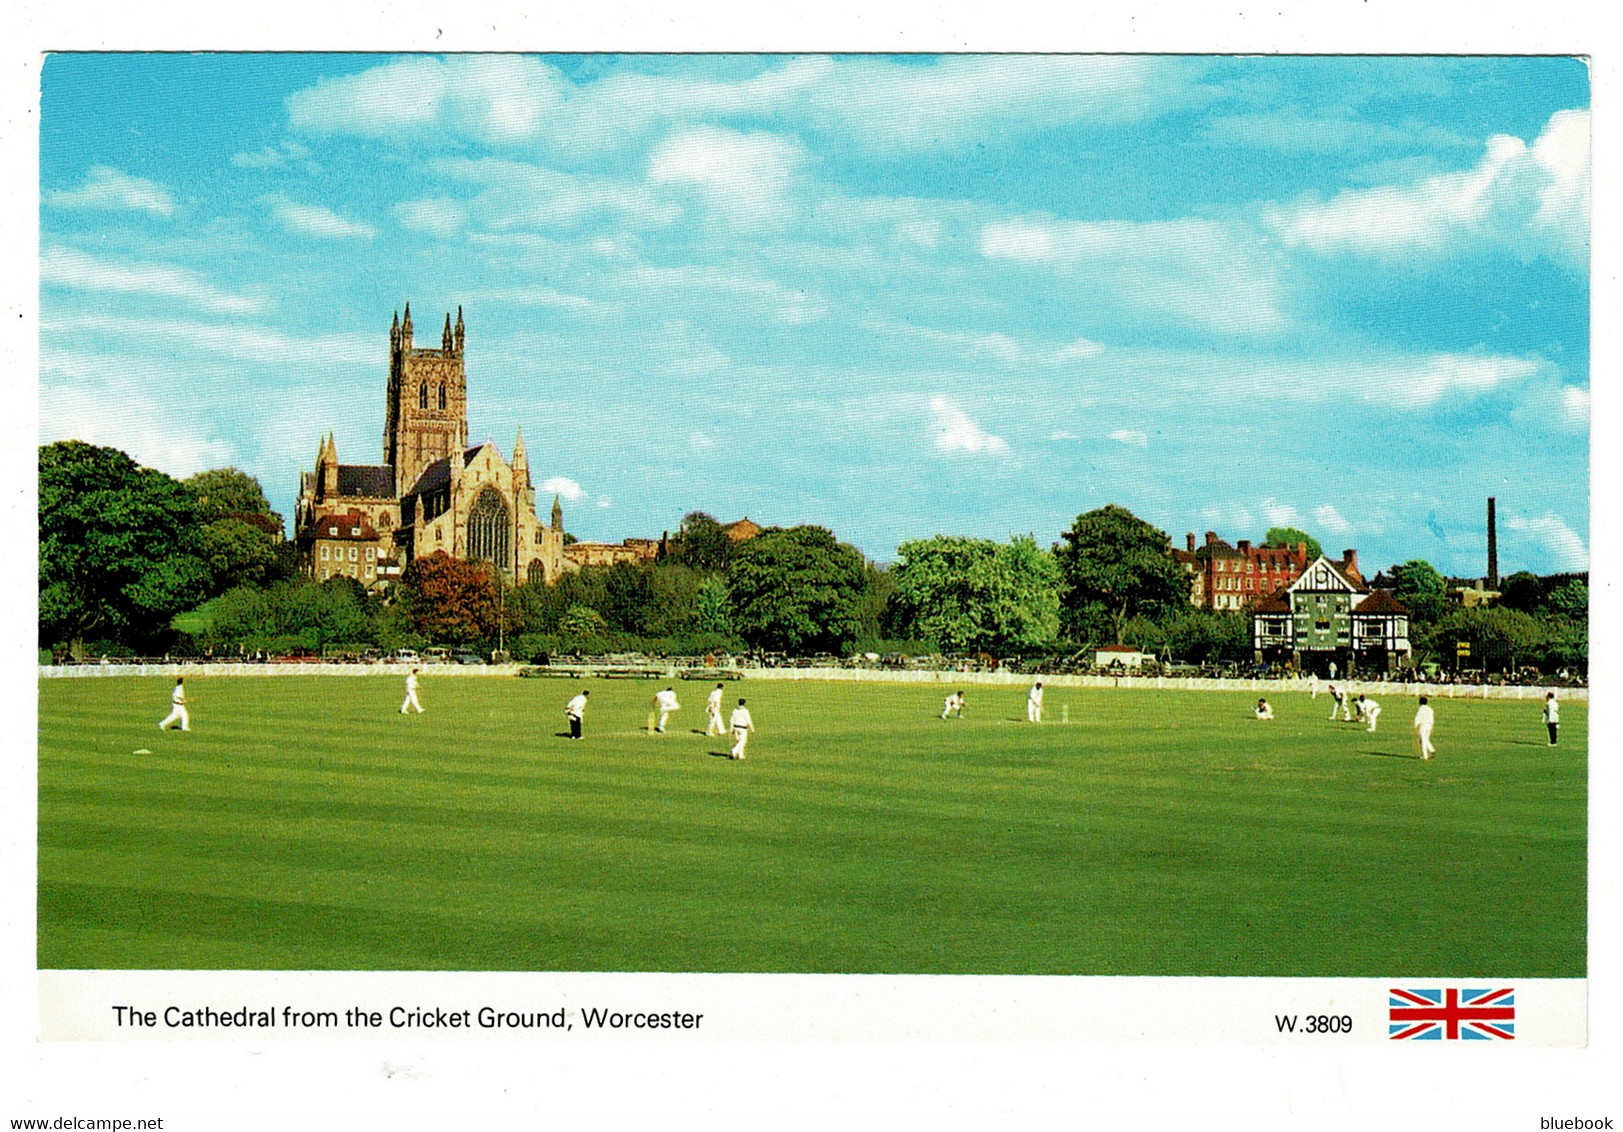 Ref 1404 - Postcard - Cricket Match - Worcester Cricket Ground - Sports Theme - Cricket